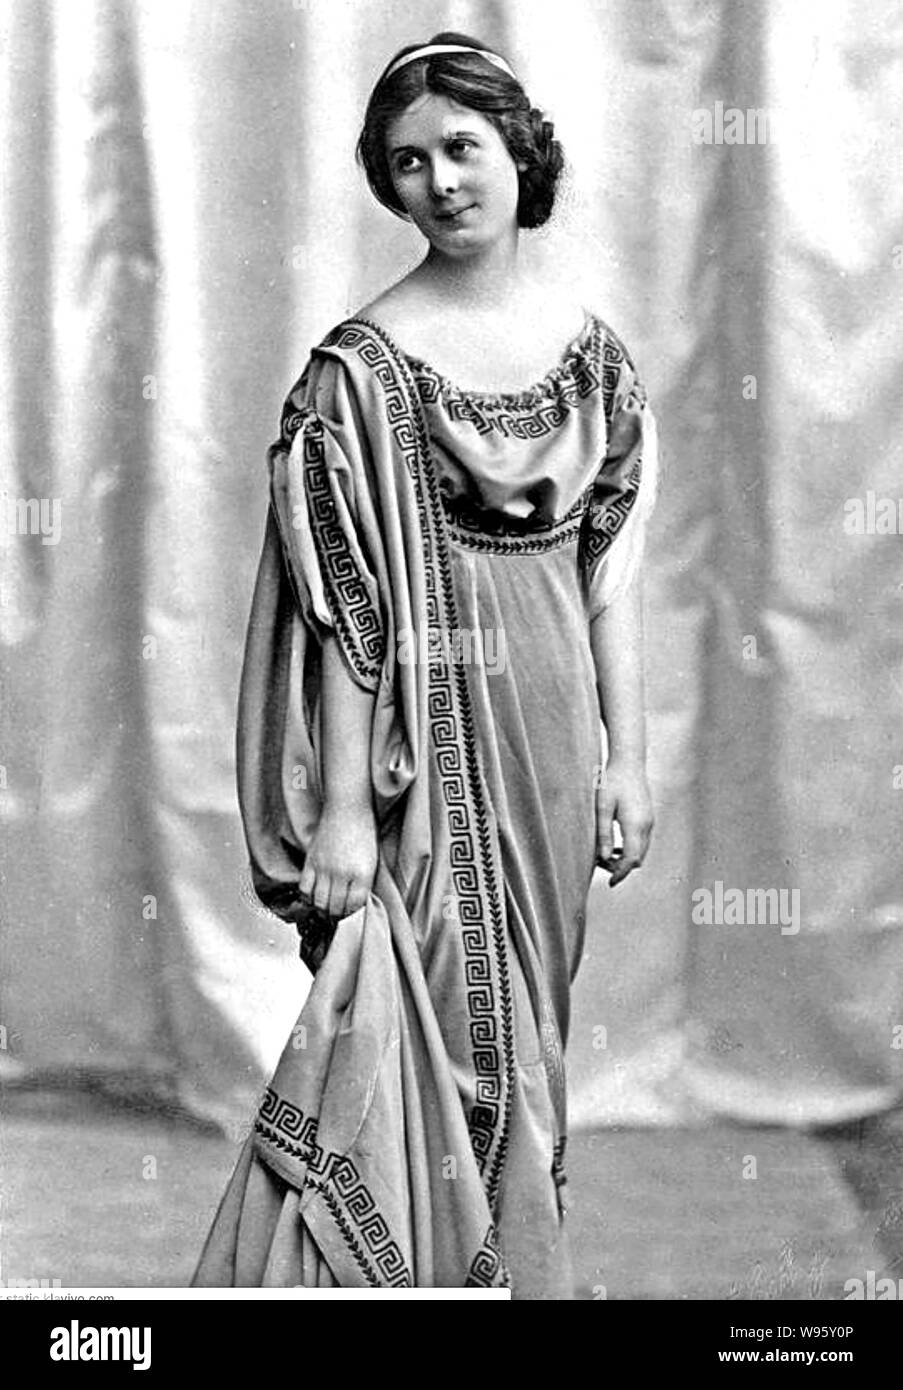 ISADORA DUNCAN (1877-1927) danseuse franco-américaine à propos de 1914 Banque D'Images